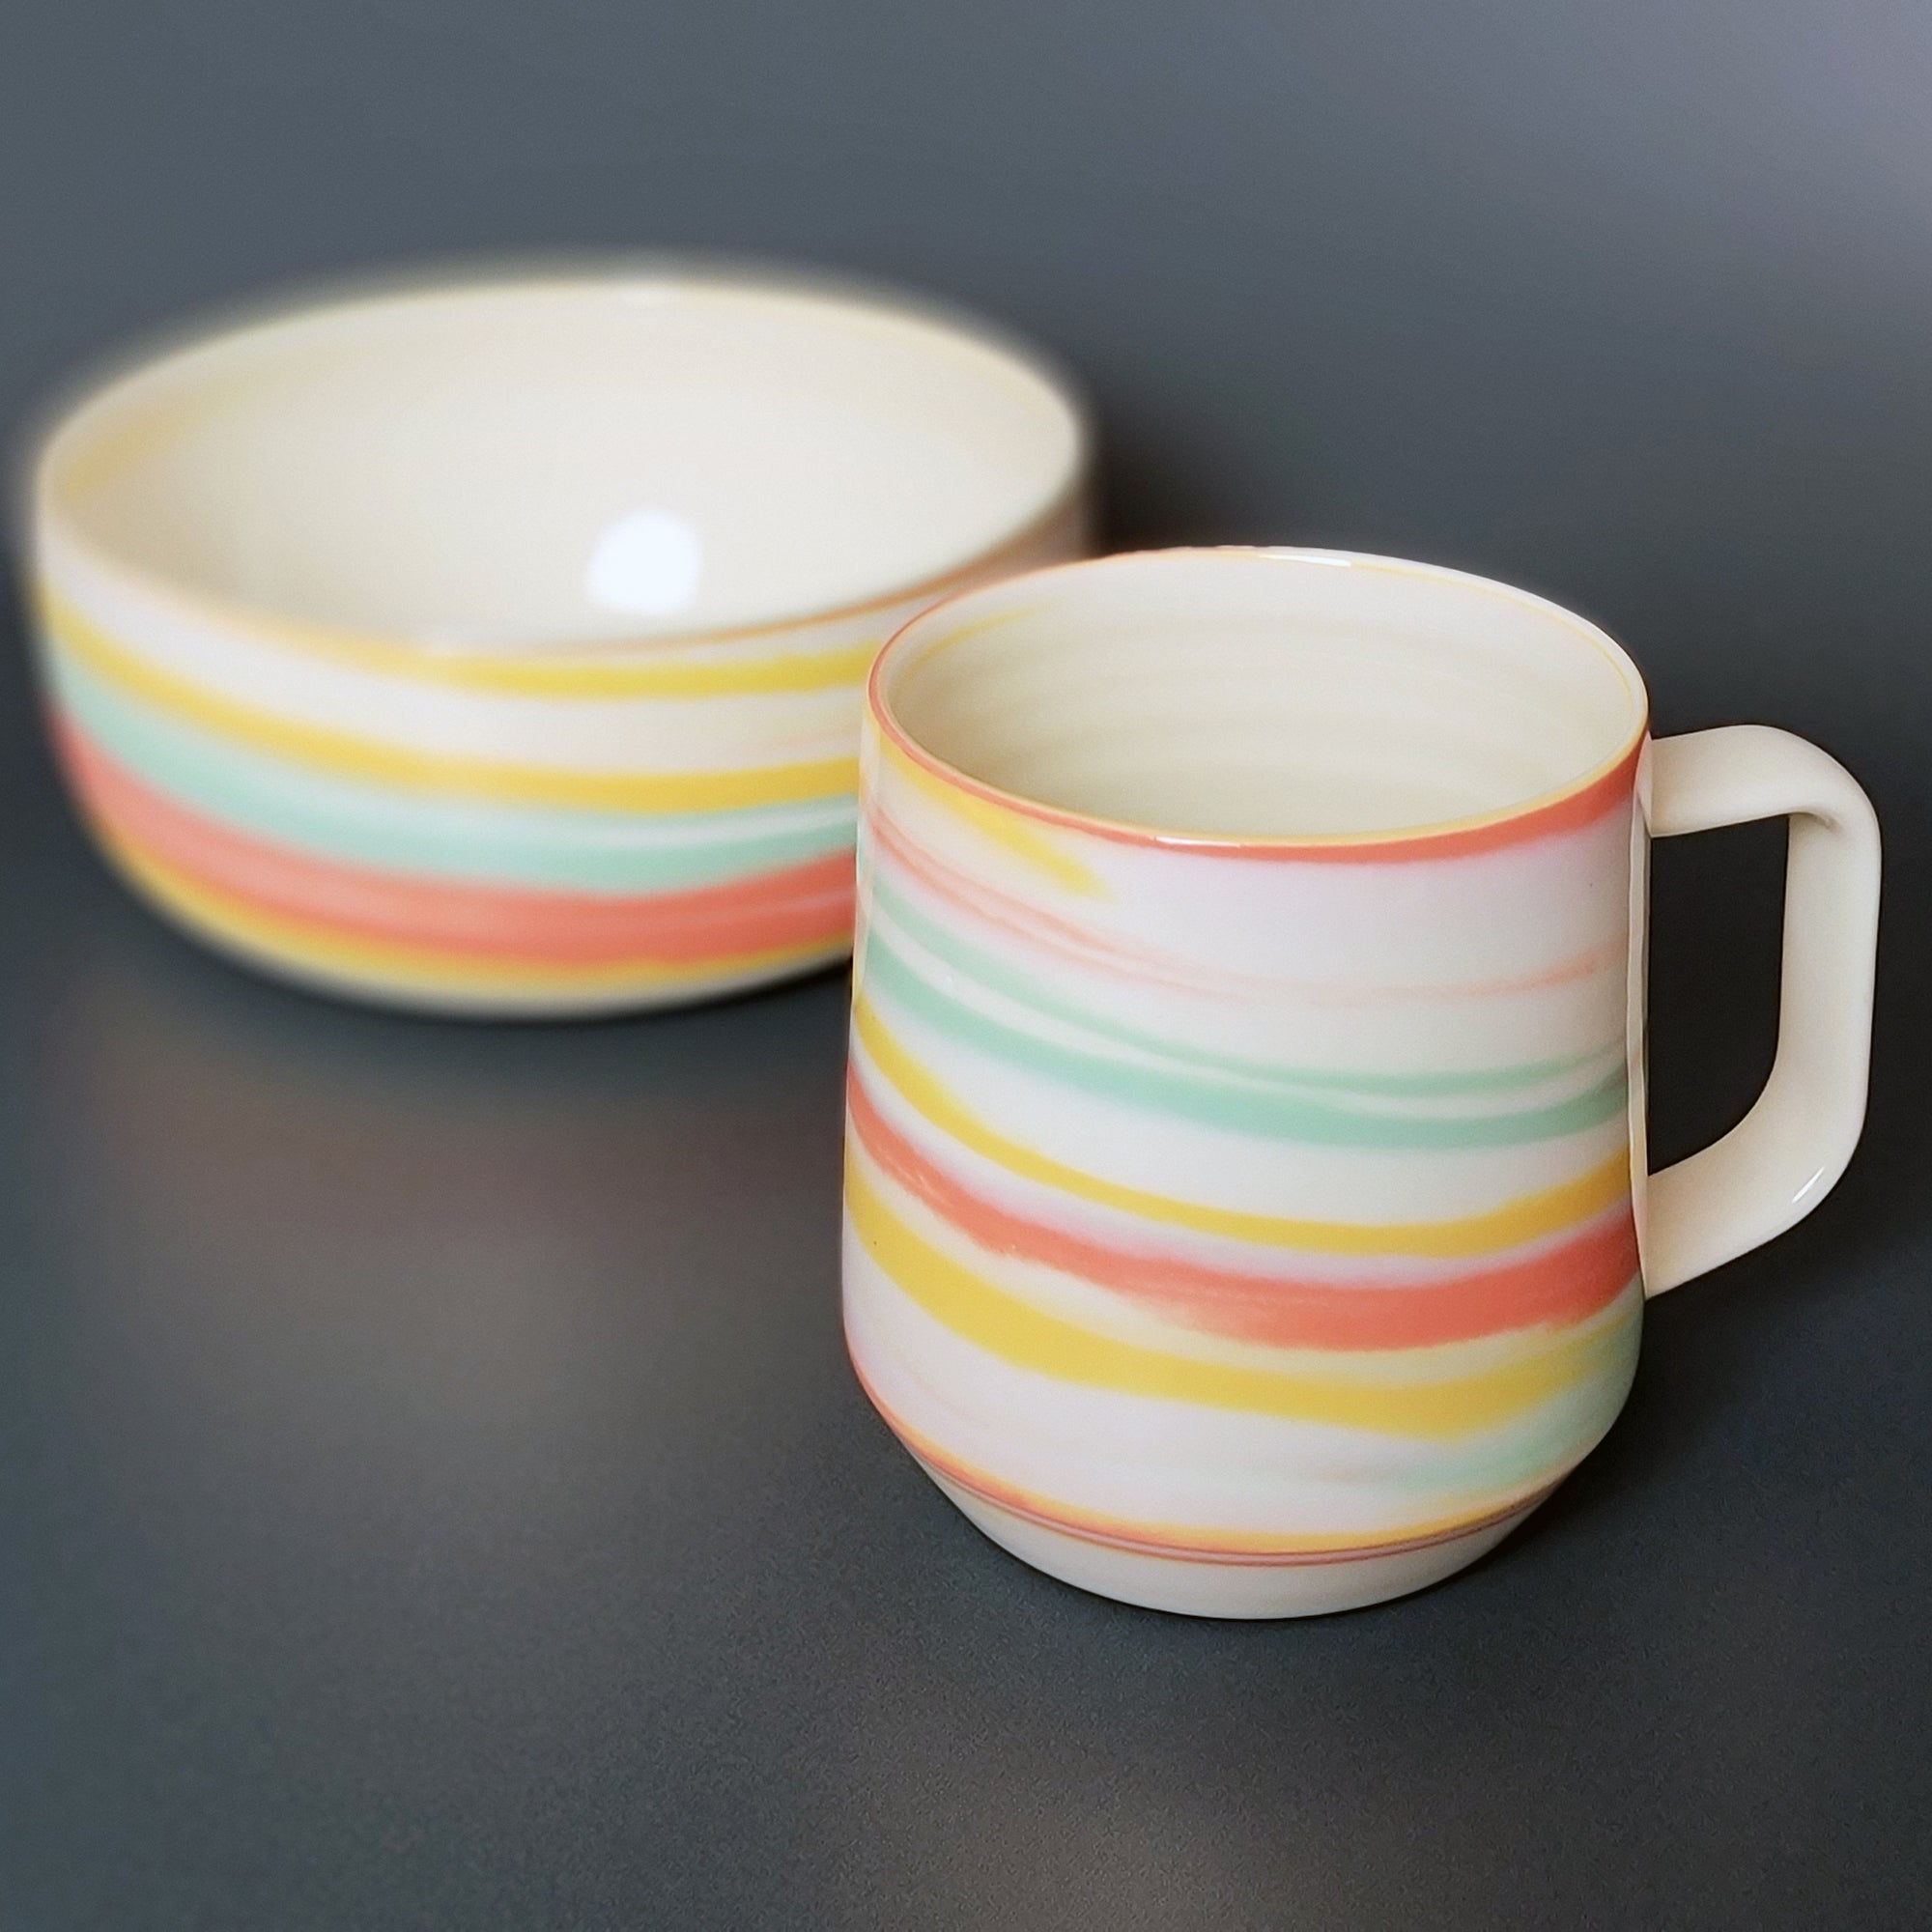 taffy mug and bowl